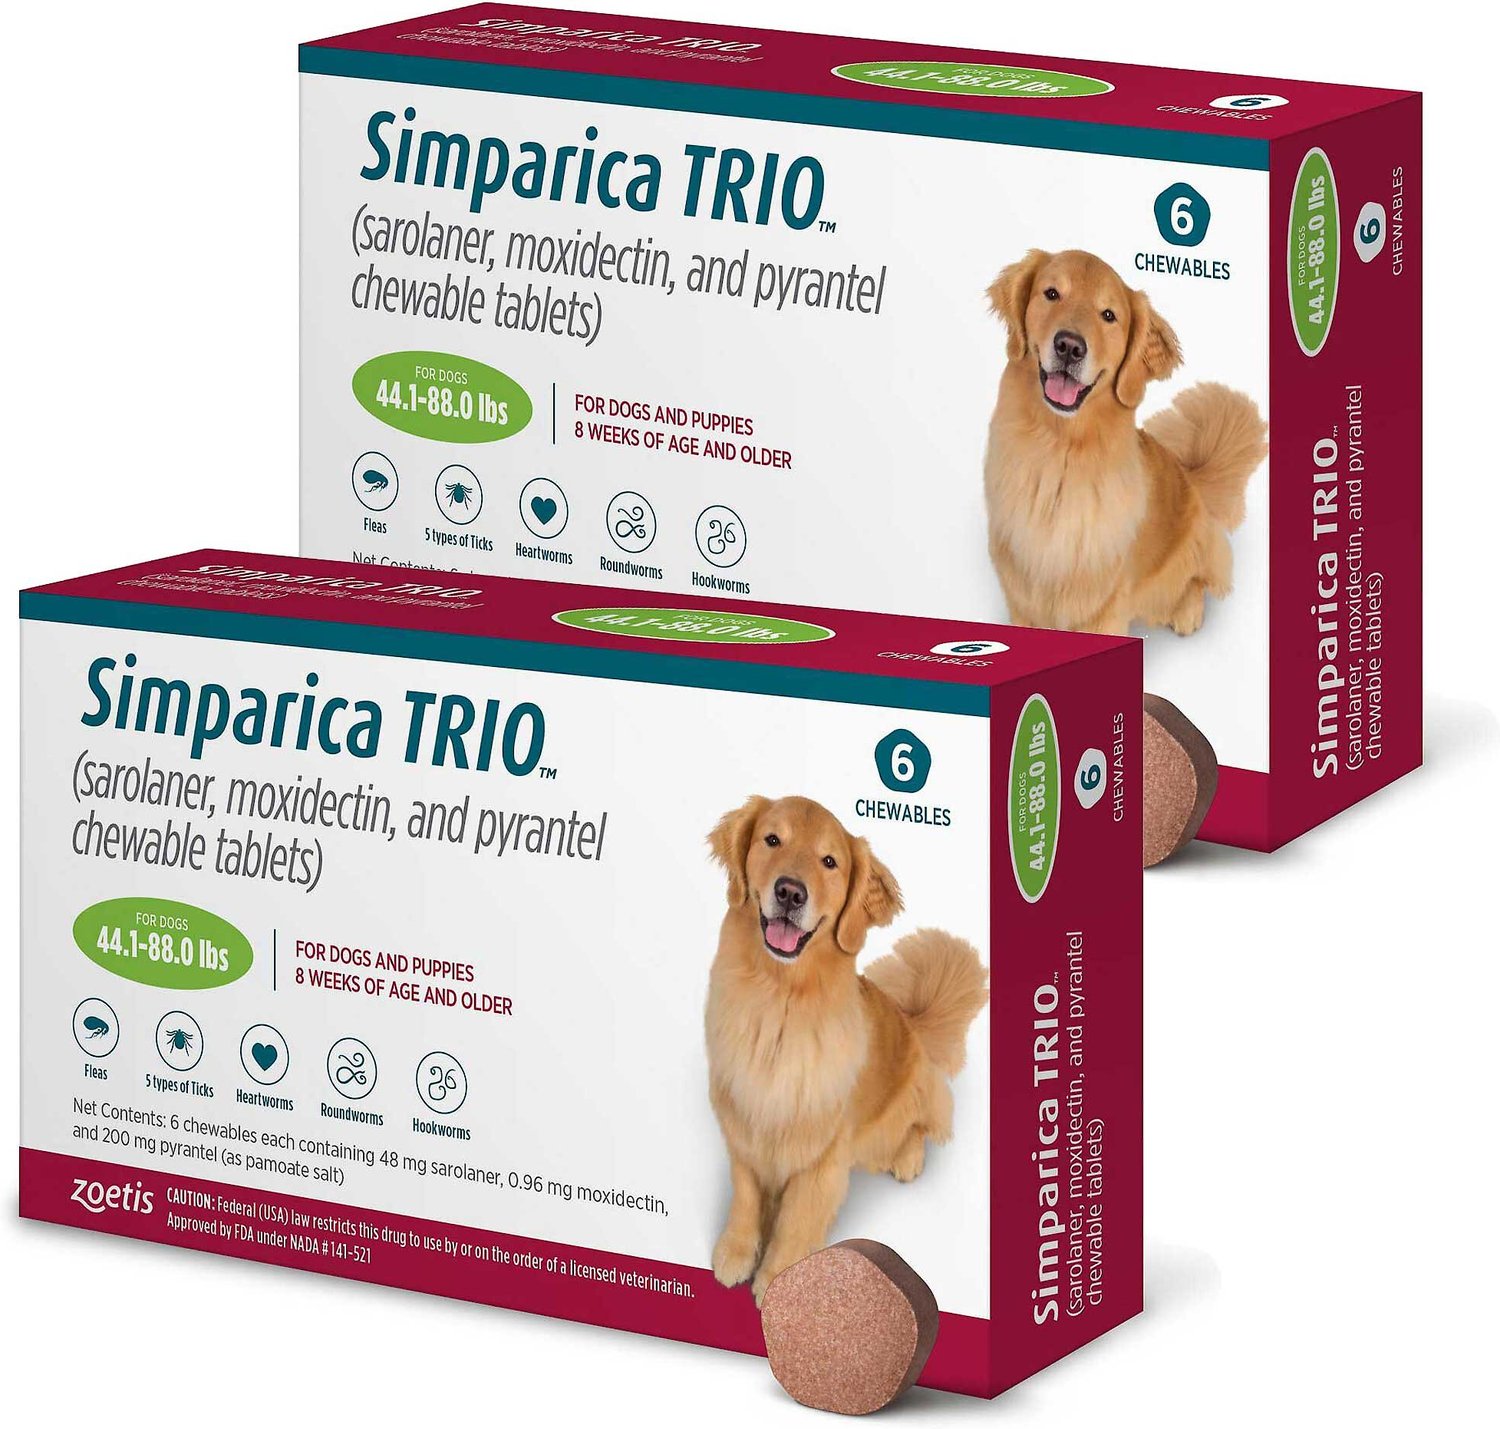 simparica-trio-sizes-ubicaciondepersonas-cdmx-gob-mx